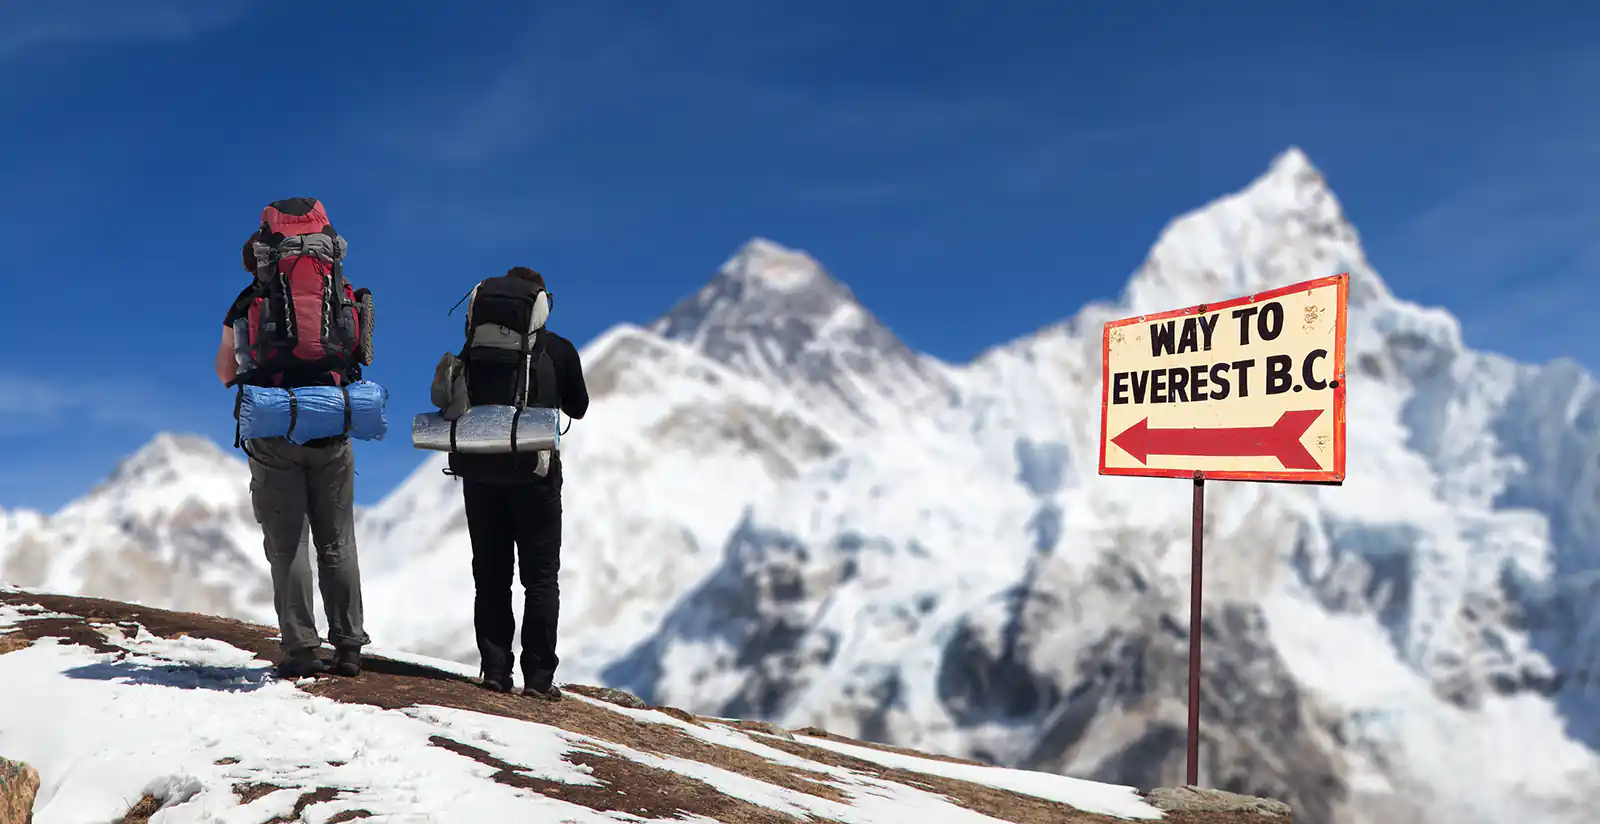 In Kala Patthar - Everest Base Camp Trek in January